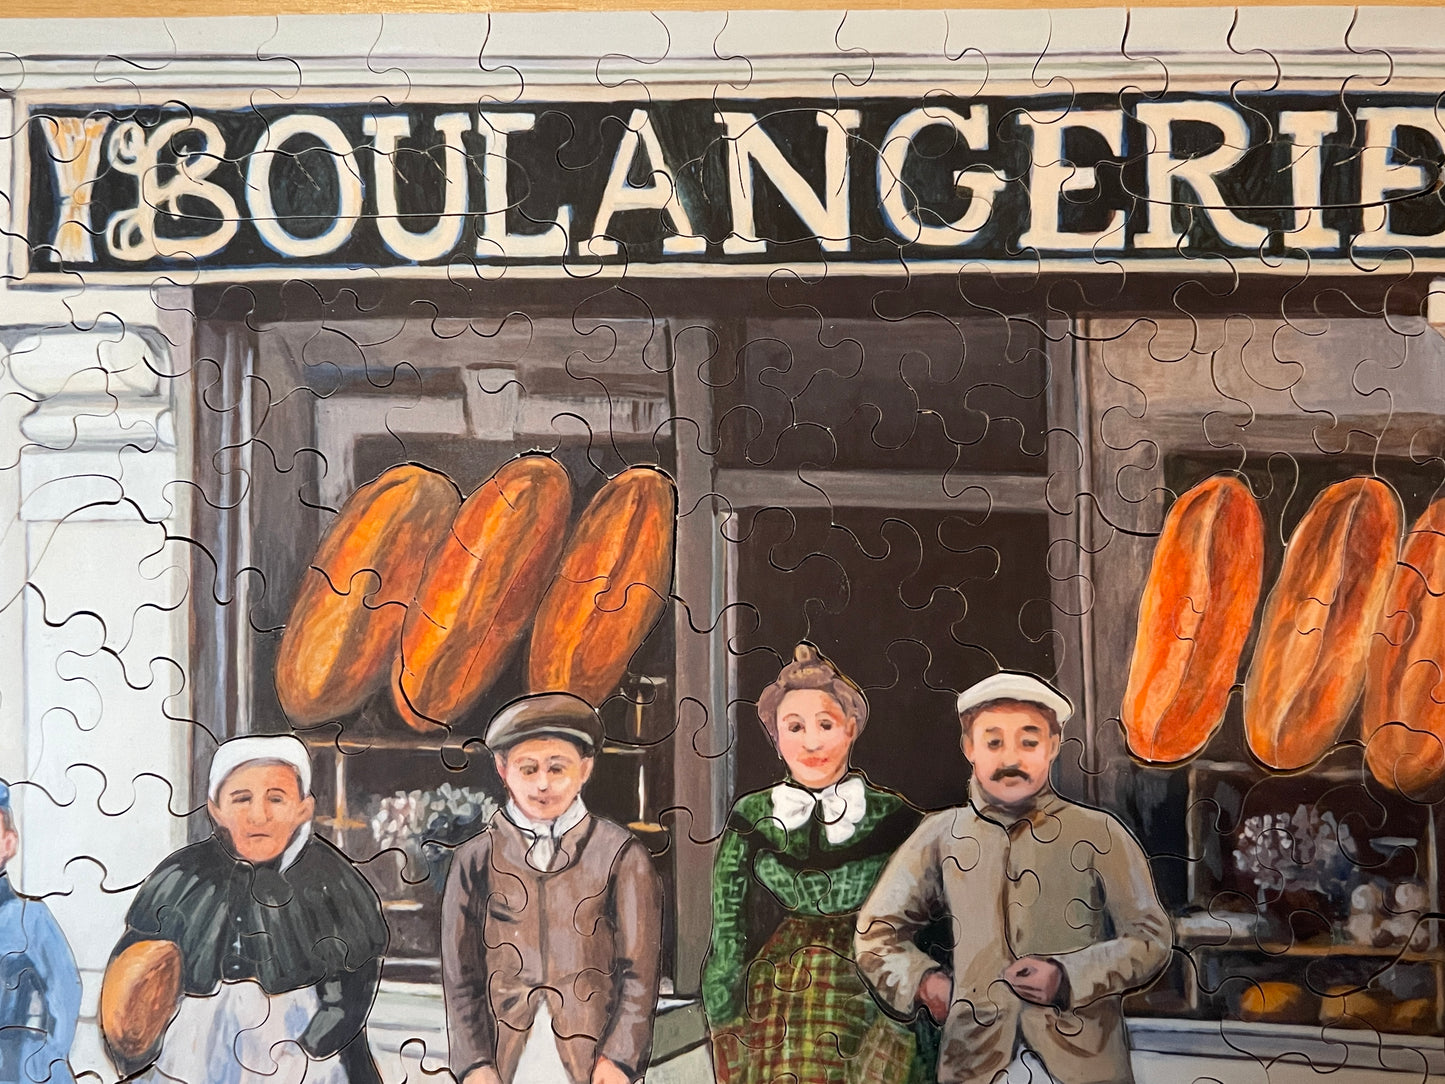 Boulangerie/Bakery